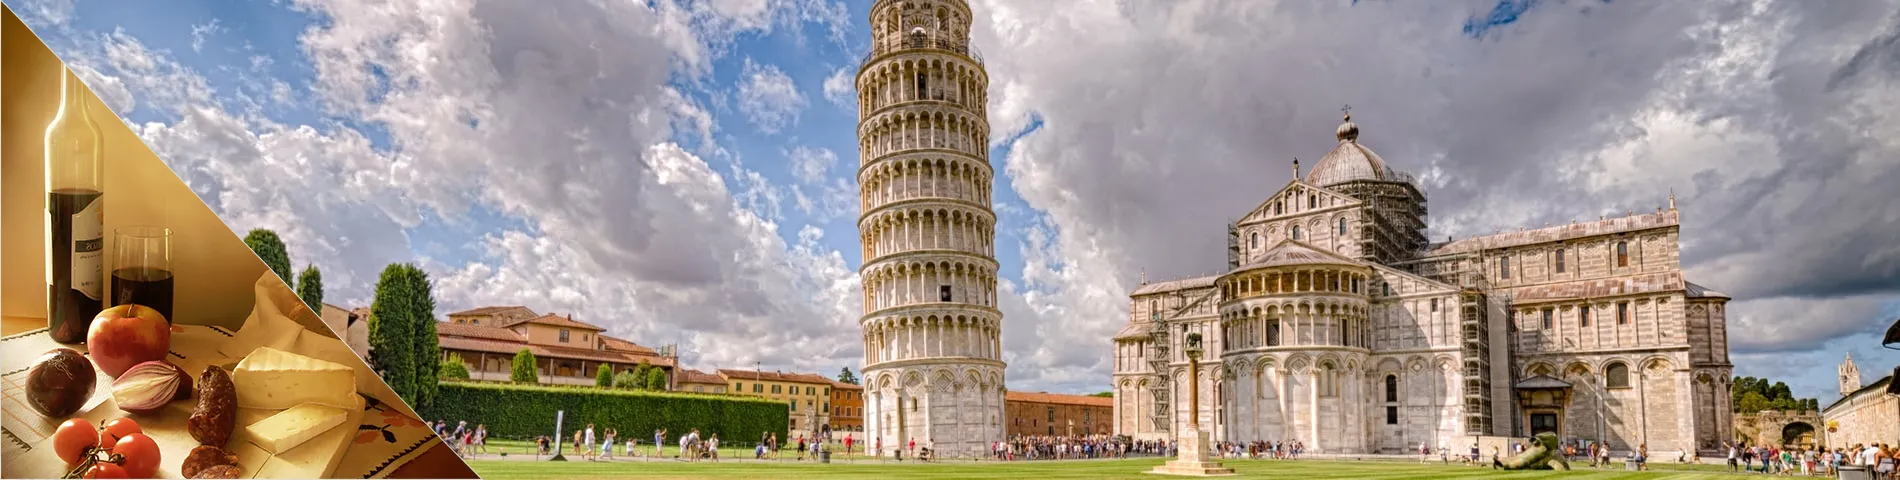 Pisa - Italienska & kultur